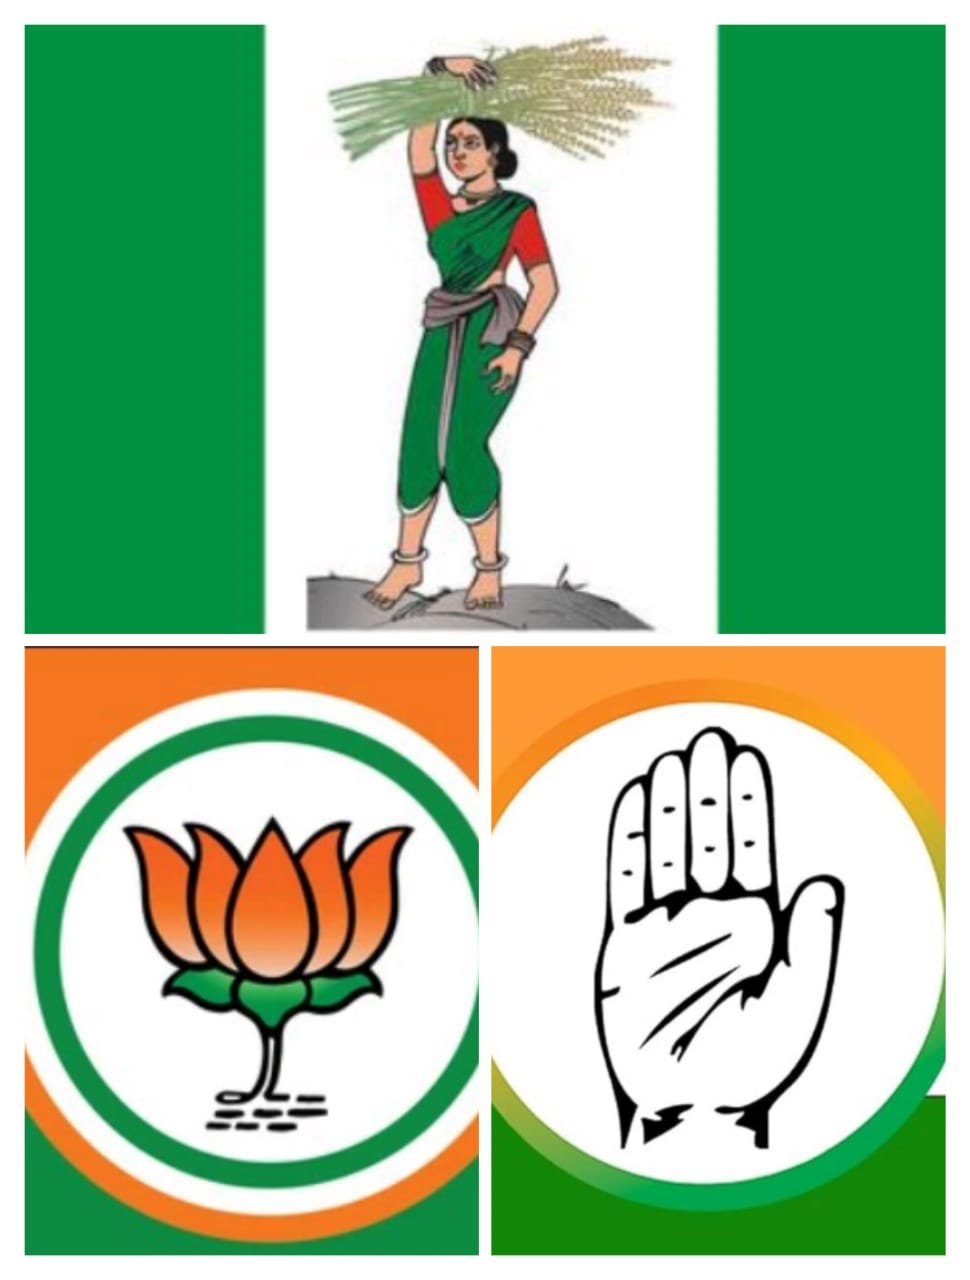 कर्नाटक निवडणूक: राज्यात मतदानाची तयारी सुरू असताना काँग्रेस आणि भाजपमध्ये चुरशीची लढत